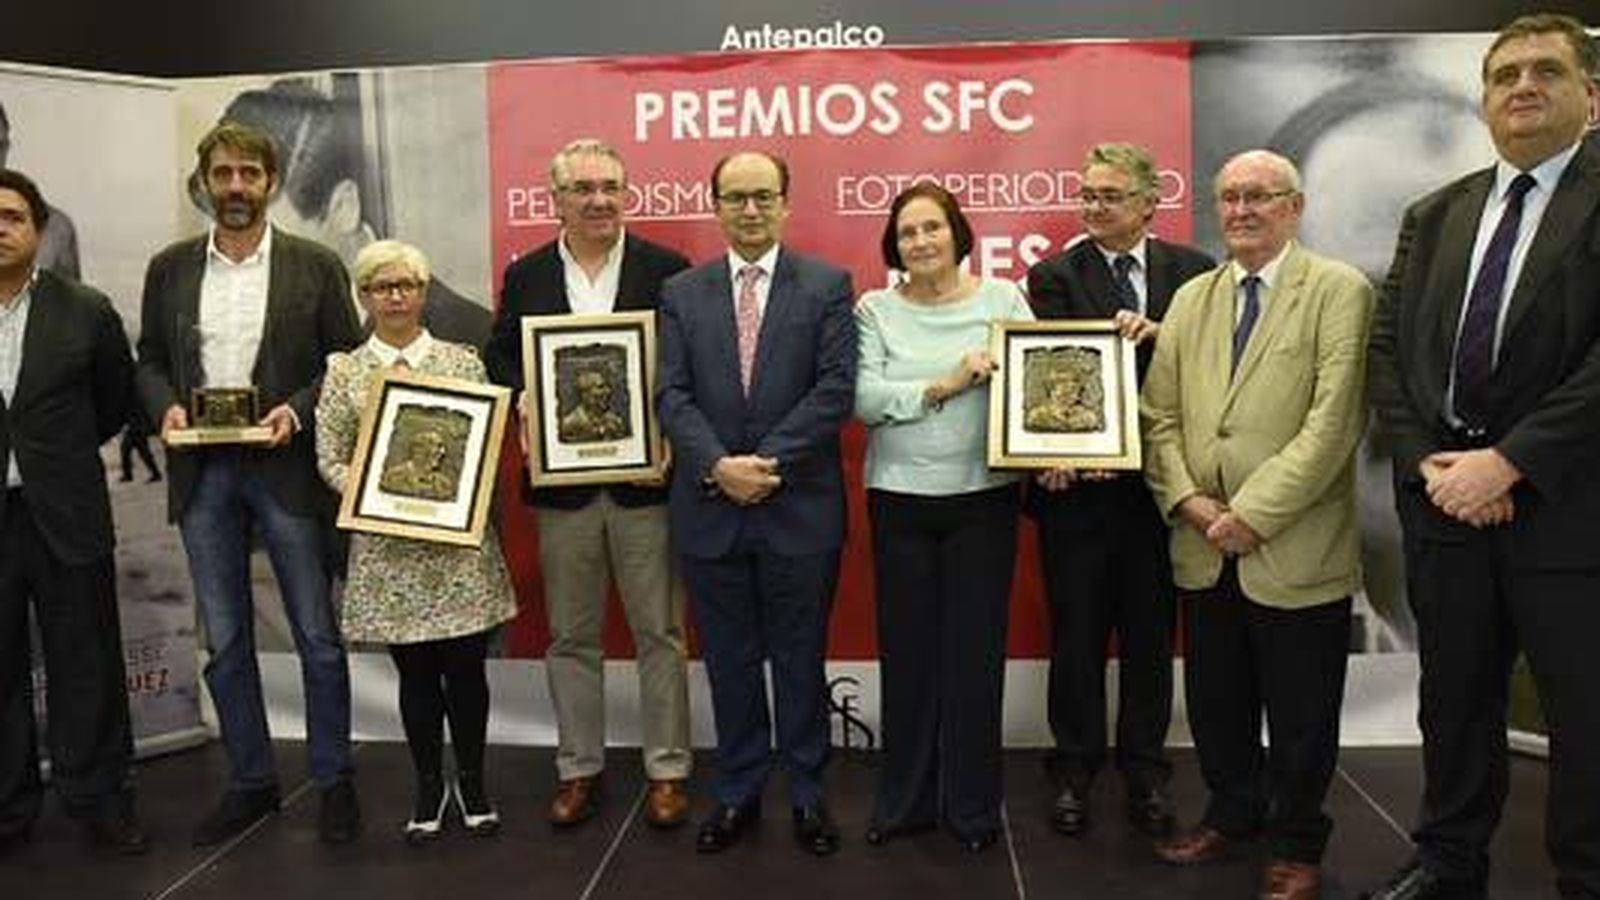 Foto: Nuestro compañero José Manuel García, a la derecha de José Castro, presidente del Sevilla, fue premiado por un artículo publicado en El Confidencial (FOTO: sevillafc.es)